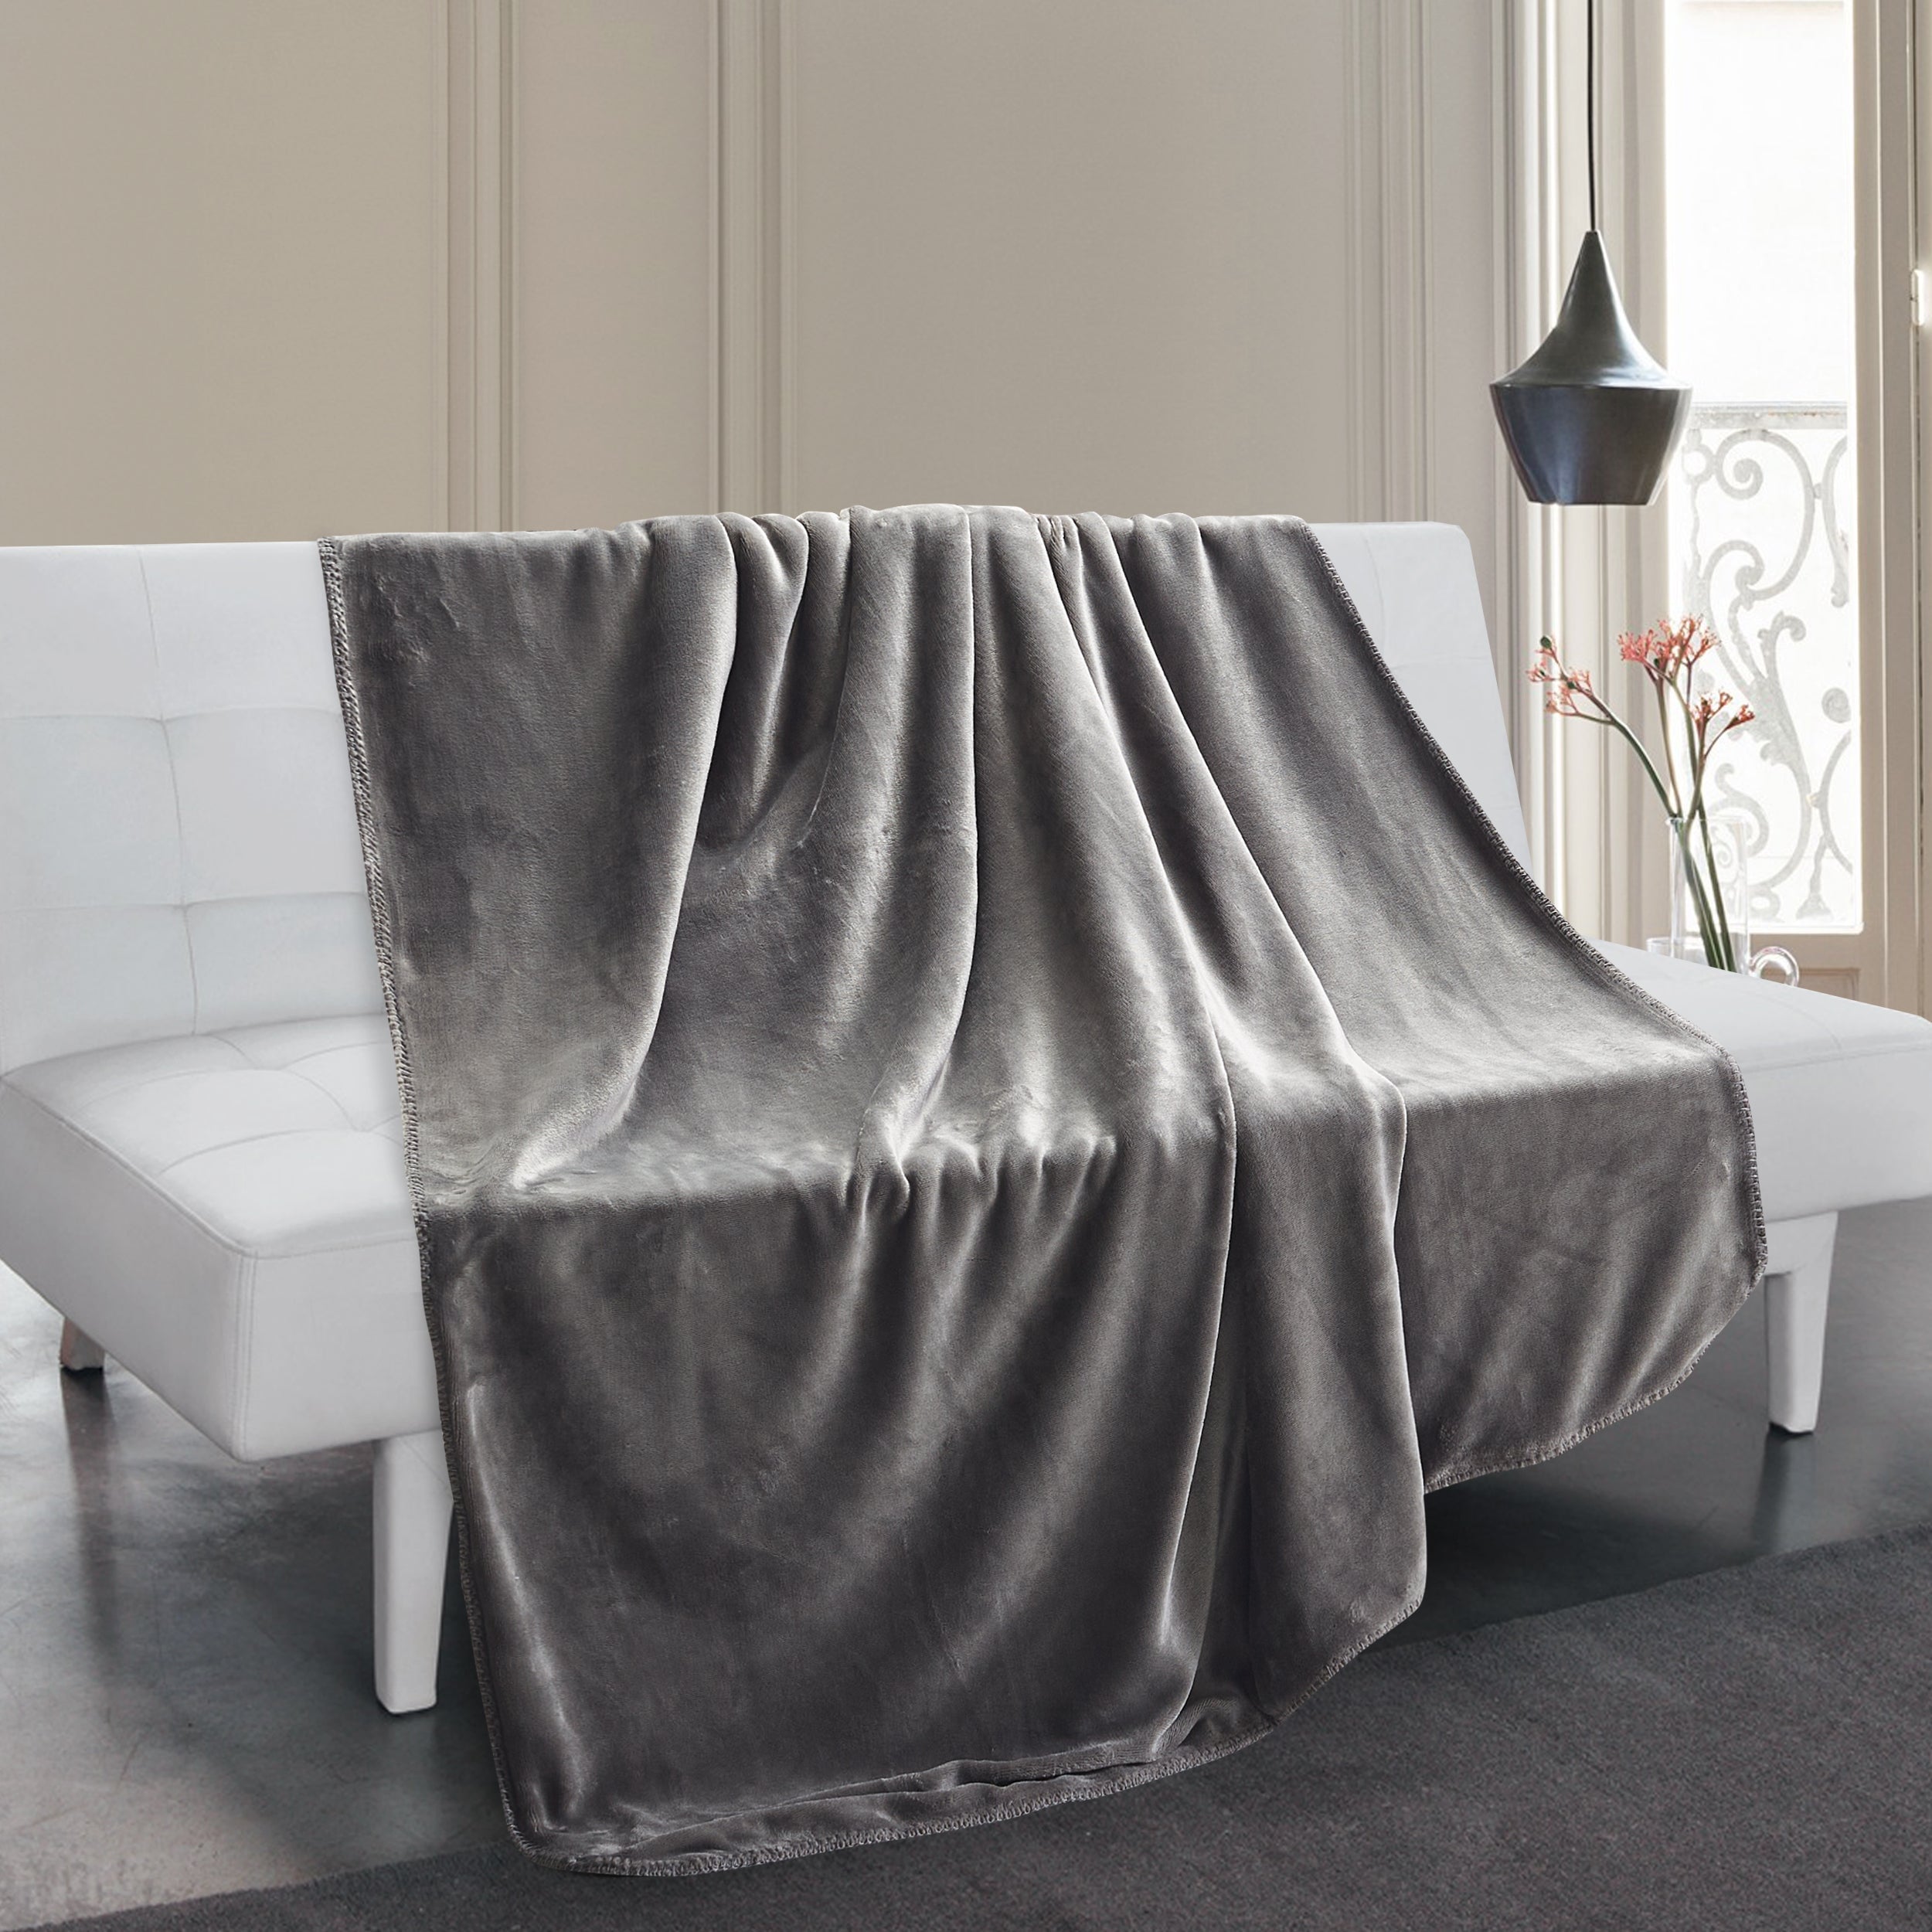 Luxury Crushed Velvet Berber Throw Blanket 50" x 60" Reversible All Season 